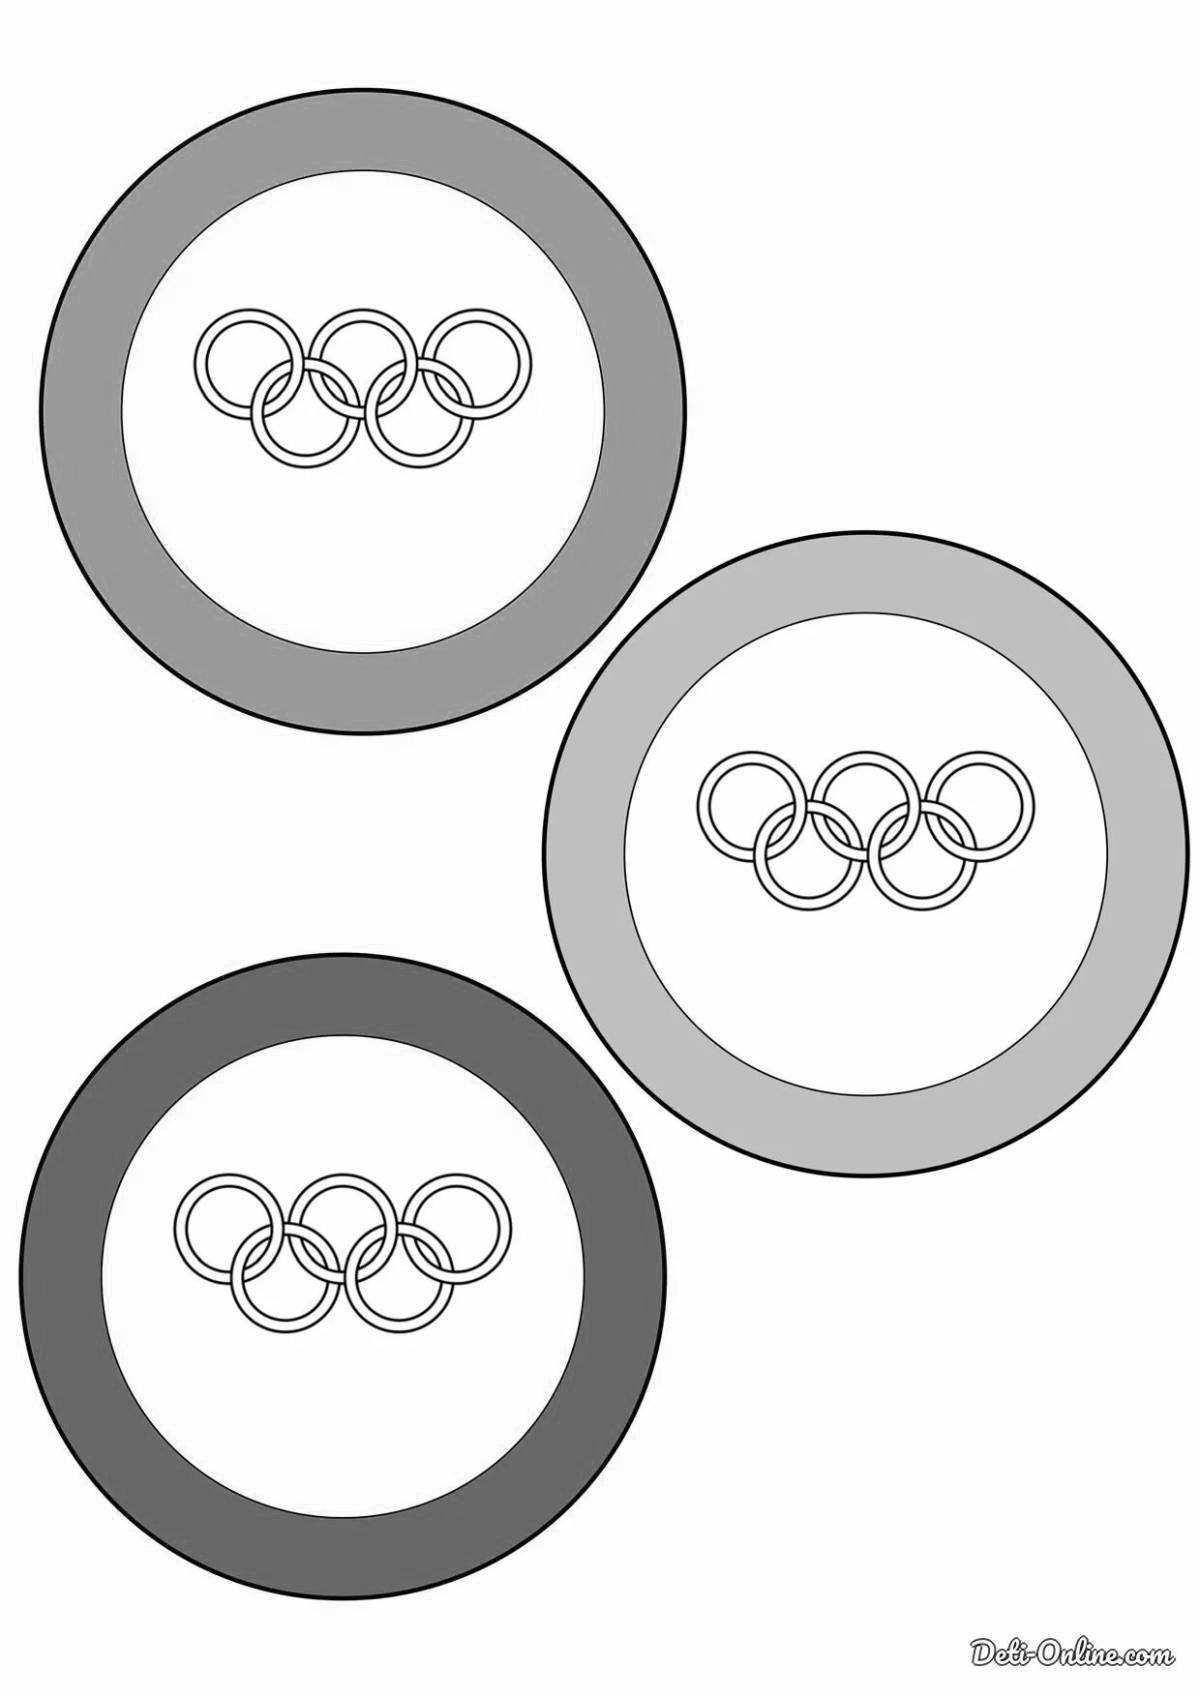 Игривая страница раскраски олимпийских колец для печати